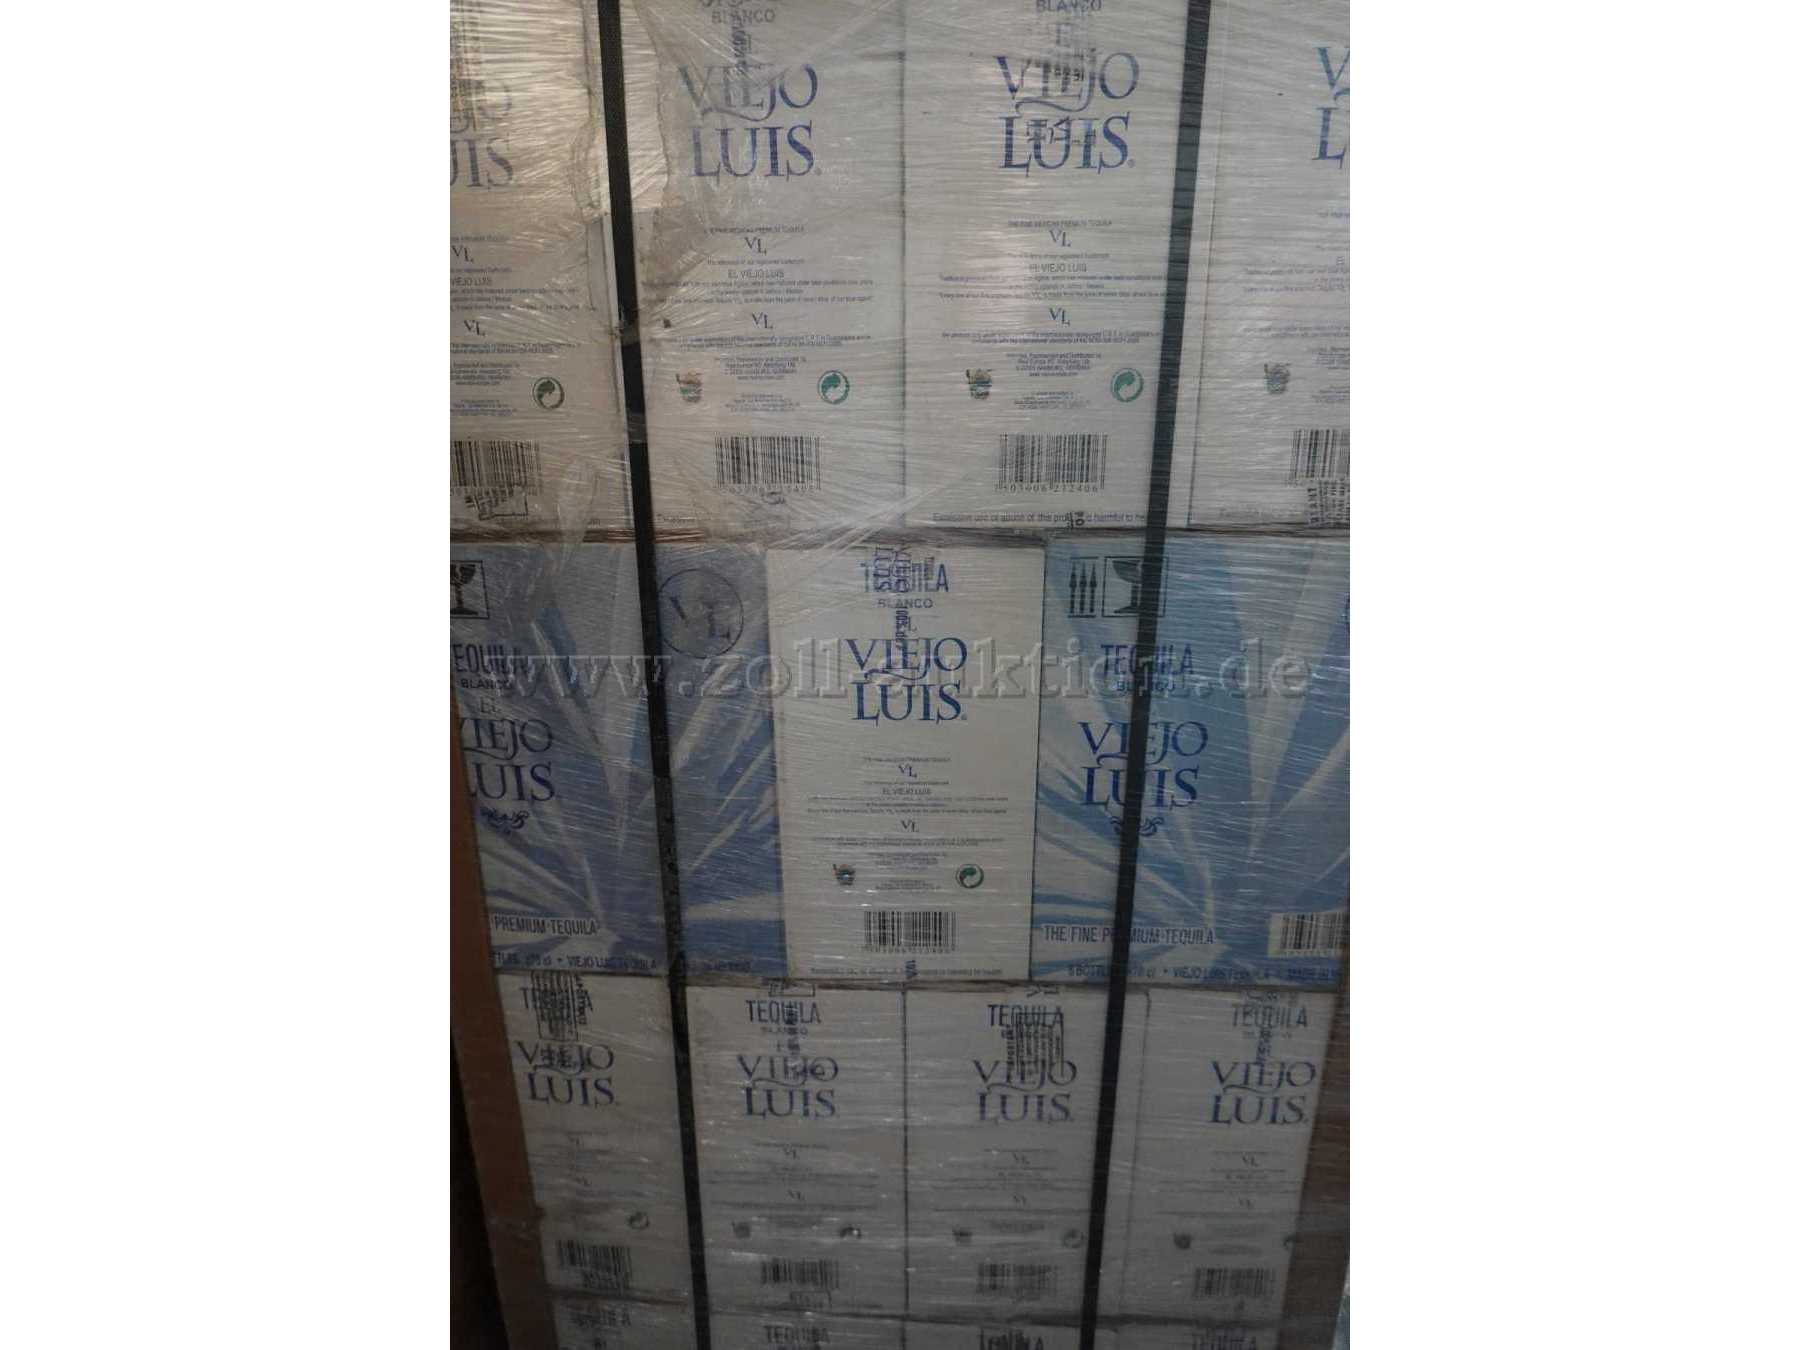 Tequila Silver "El Viejo Luis" 0,7 Liter 38% Vol., verpackt auf
Paletten